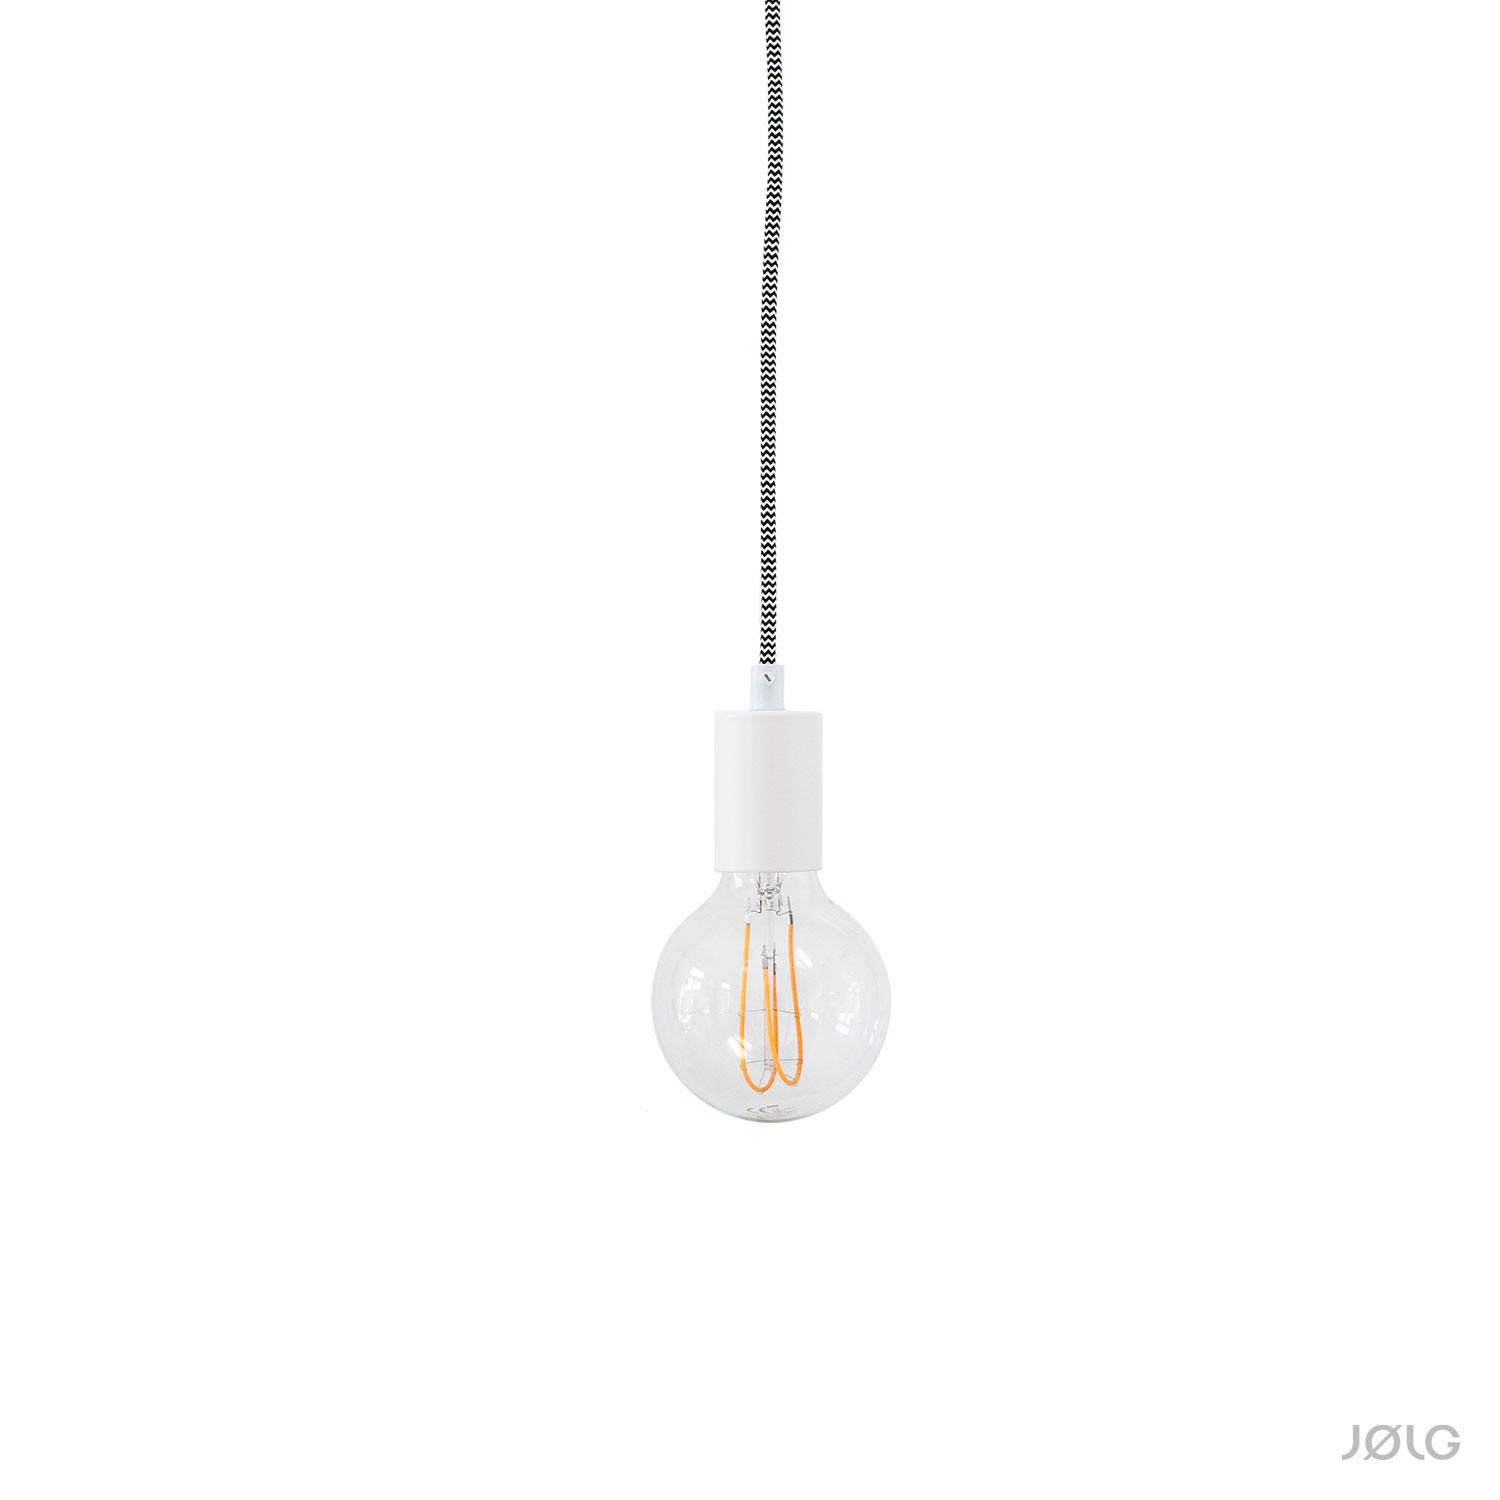 Set Lampenfassung E27 mit Pendelleuchten und Metallhülse | JØLG für DIY-Hängelampen